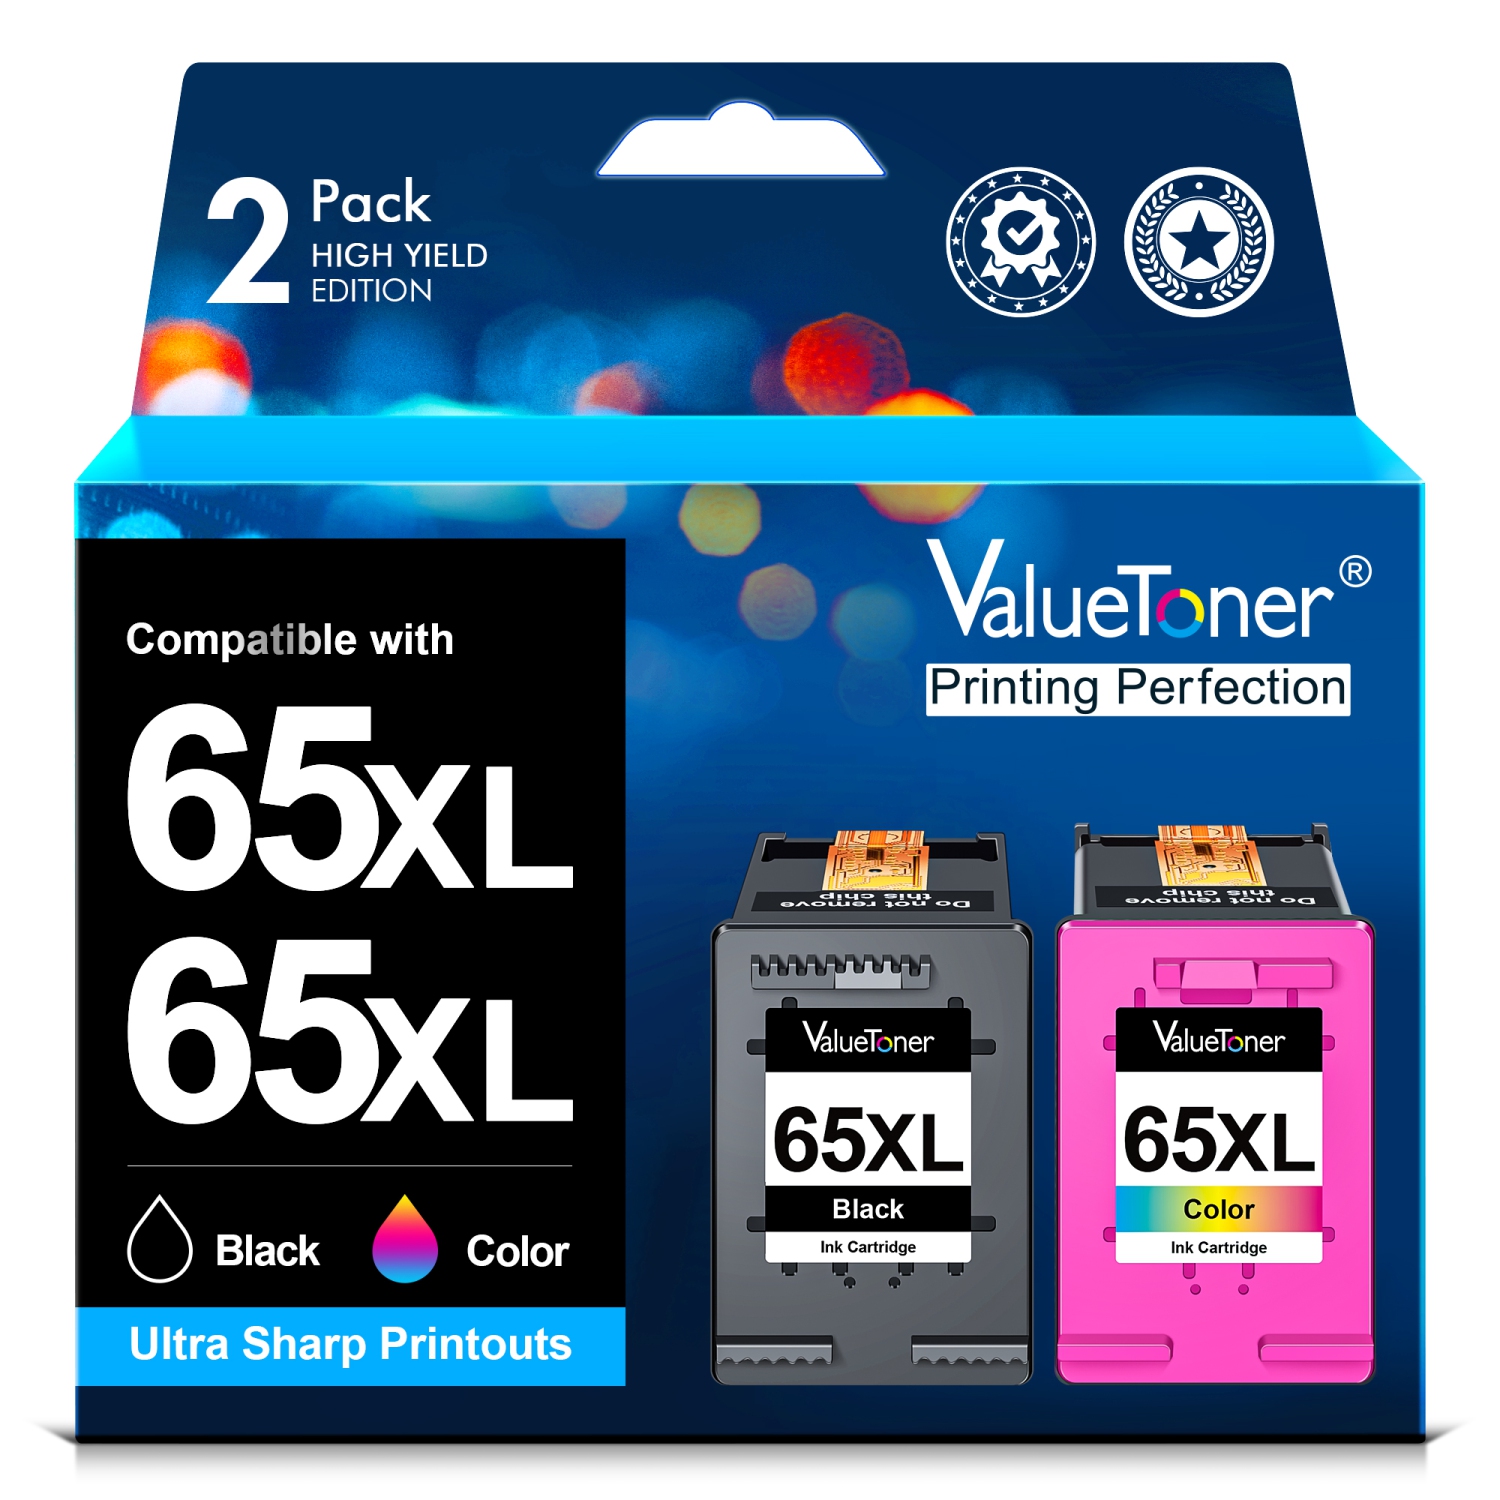 Valuetoner Refurbished (Excellent) Ink Cartridges Replacement for HP 65XL 65 XL for Envy 5055 5052 5058 DeskJet 3755 2655 3720 3722 3723 (Black, Color, 2-Pack)